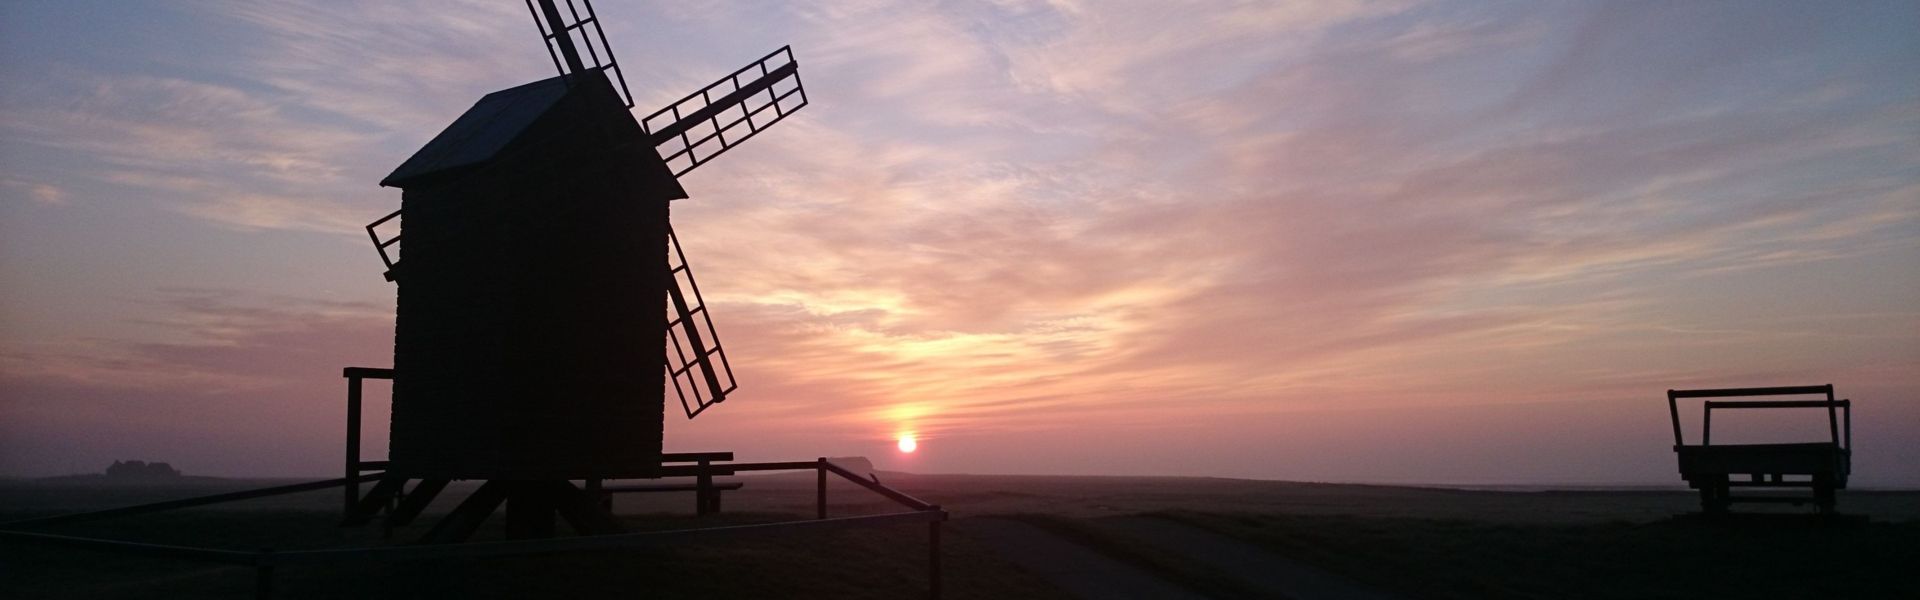 Windmühle auf Langeness, im Hintergrund die Abendsonne